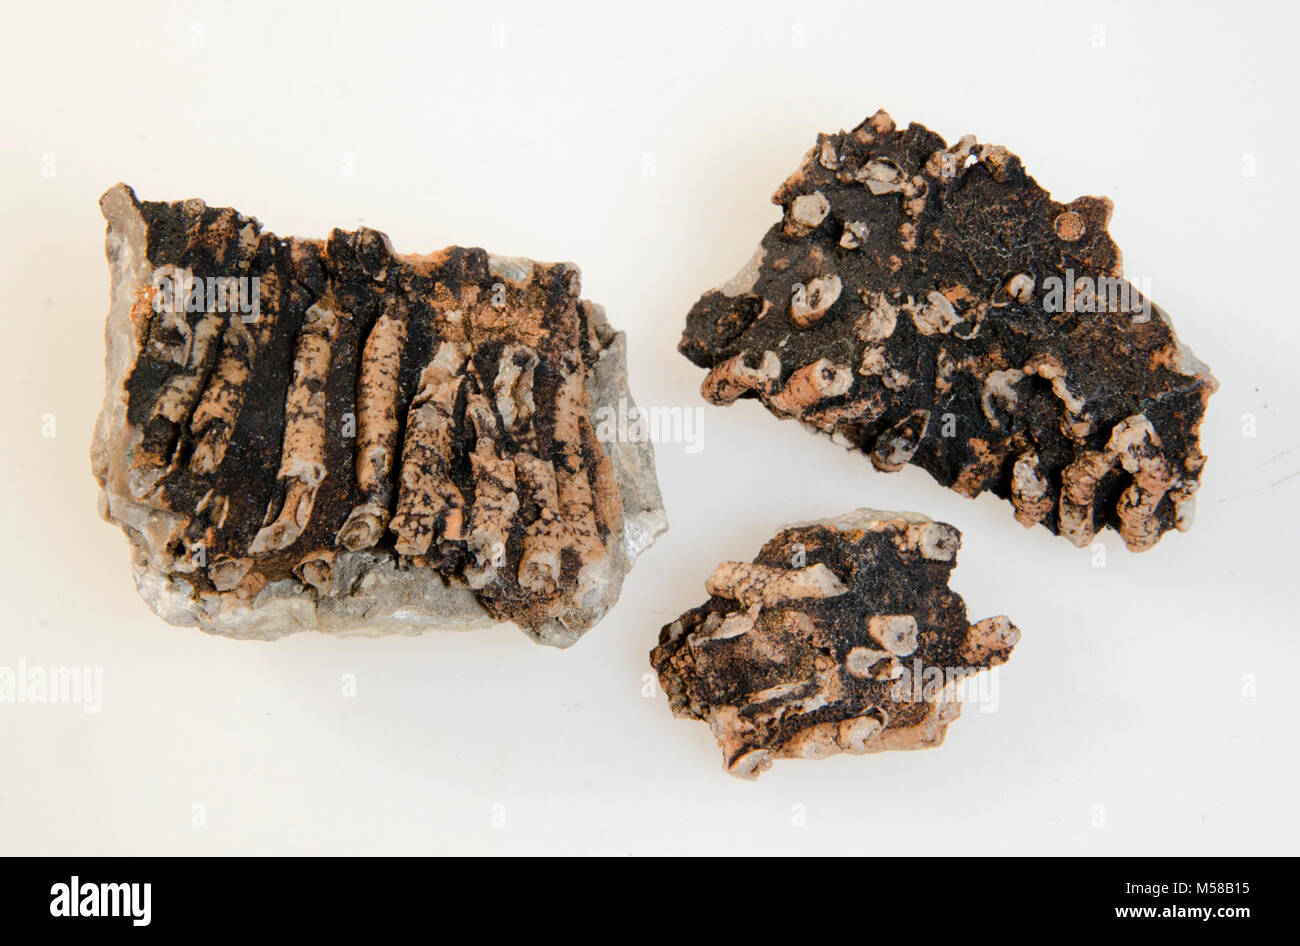 Parco Nazionale del Grand Canyon GRCA corallo fossile. SYRINGOPORA SURCULARIA campione di fossili trovati nella REDWALL calcare (C GLI STATI, 44 piedi sopra la base). Originariamente identificato come sopra con un ? (RCG) e RE-È STATO IDENTIFICATO W. SANDO NEL 1968 COME SYRINGOPORA SURCULARIA. La scheda Catalogo legge un provino in prestito (INDIFINITE) negli Stati Uniti. Museo Nazionale, novembre 1959, 2 esemplari PRESTATO AL E.D. MCKEE, Dicembre 15,1959-deve avere restituito-3 fossili nella raccolta di studio 11-1989. Tutti e tre i SPECIMANS attualmente presenti nella collezione. Foto Stock